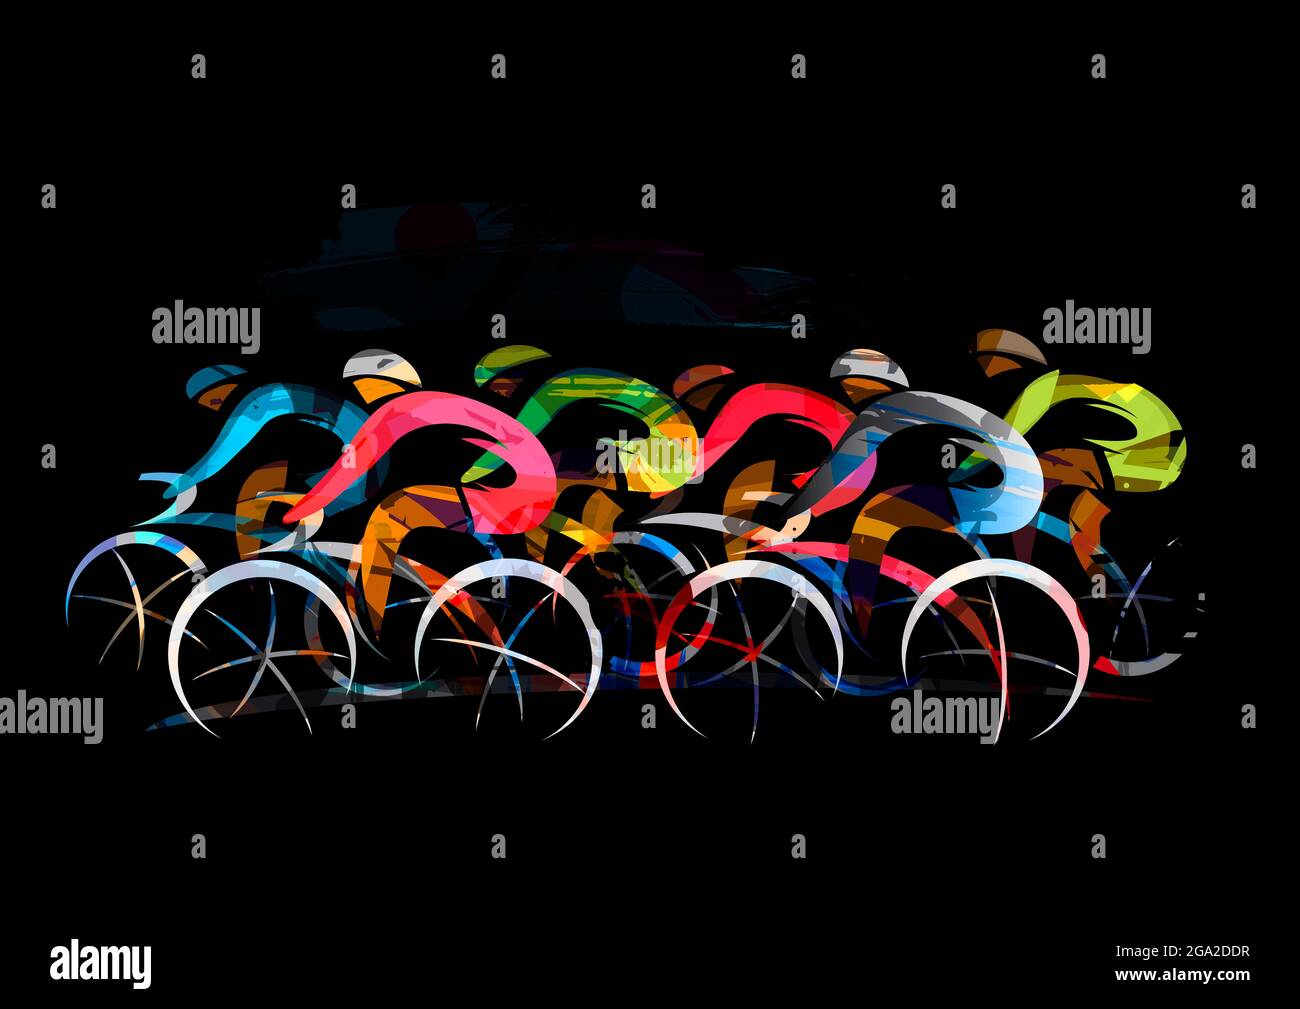 Radrennen, Straßenradsport. Ausdrucksstarke Illustration von Radfahrern in voller Geschwindigkeit. Schwarzer Hintergrund. Stockfoto